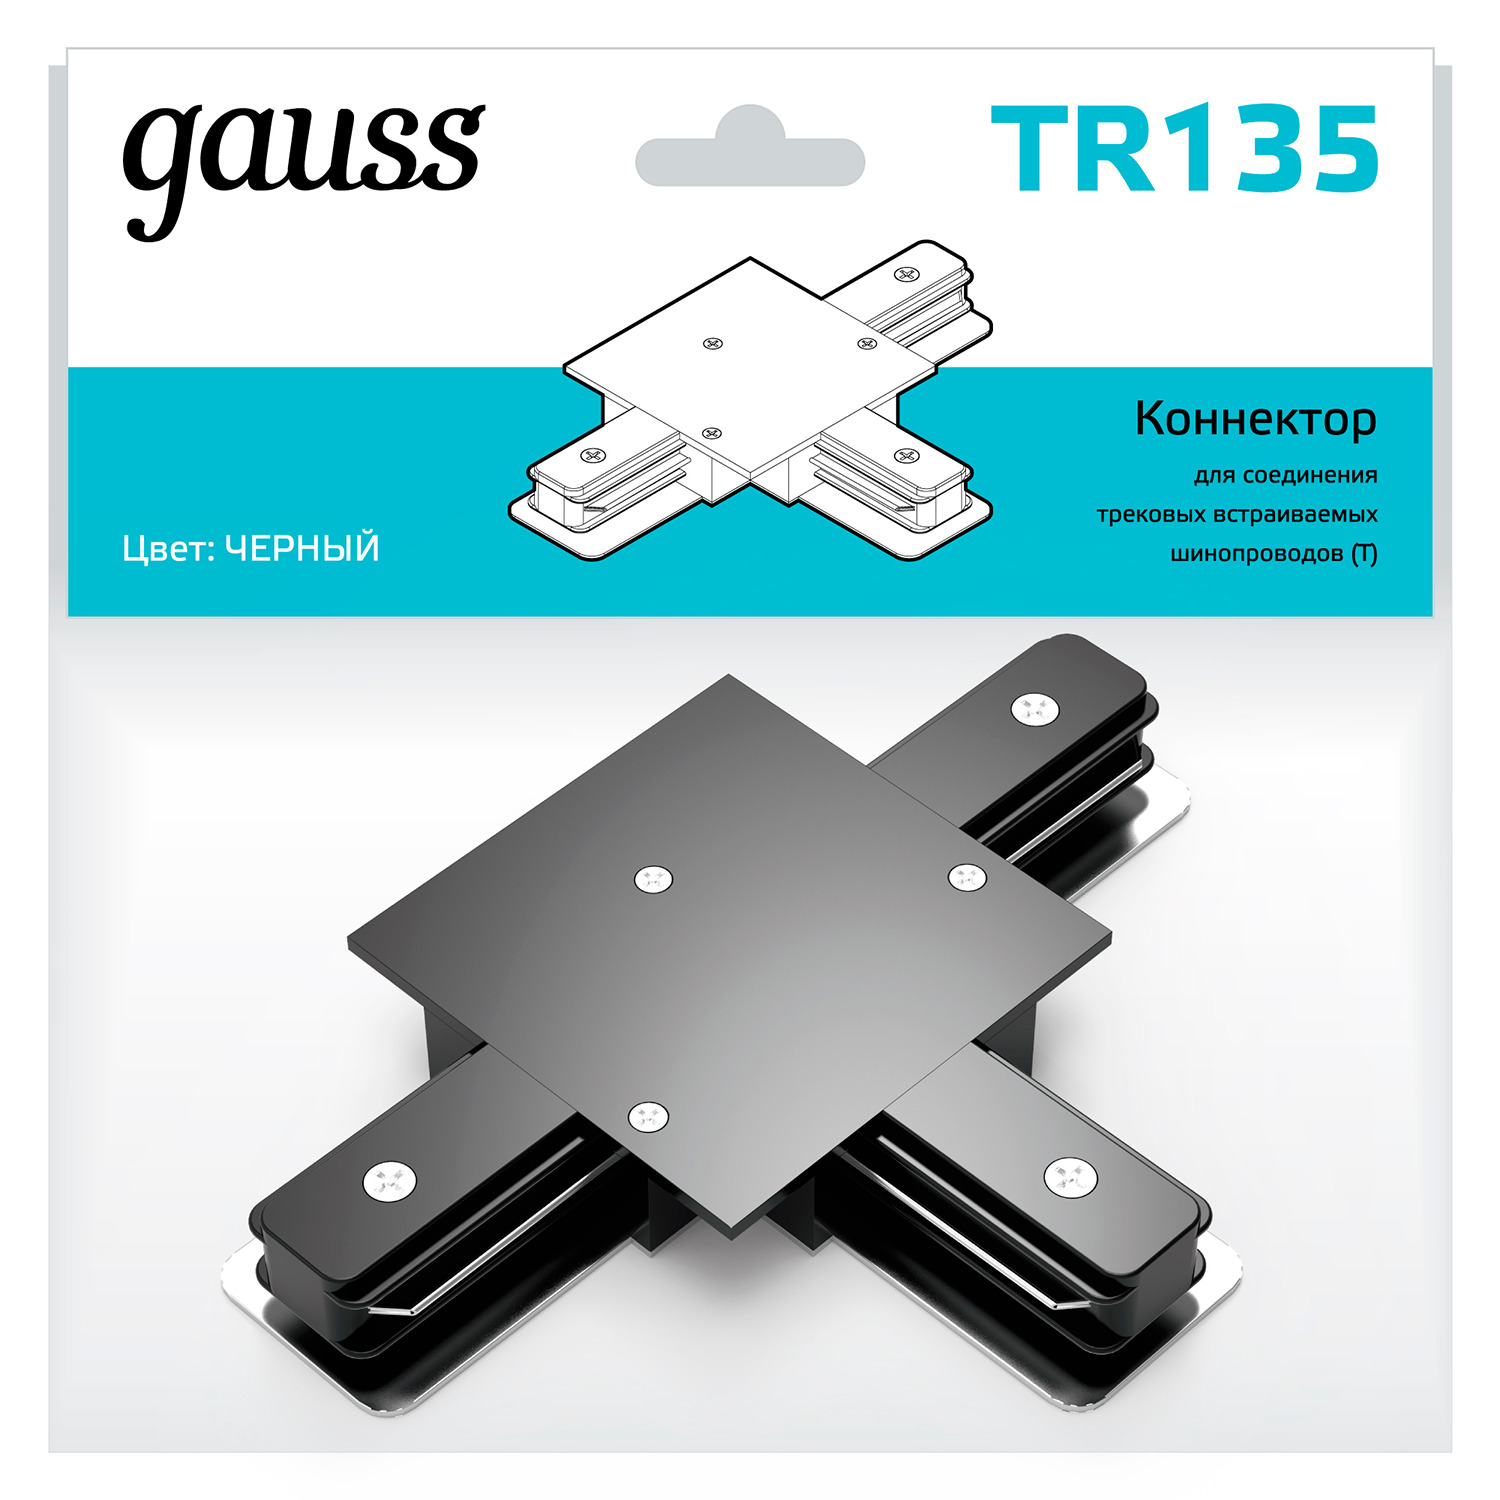 gauss коннектор для встраиваемых трековых шинопроводов черный tr137 50 шт Коннектор Gauss для встраиваемых трековых шинопроводов (T) черный